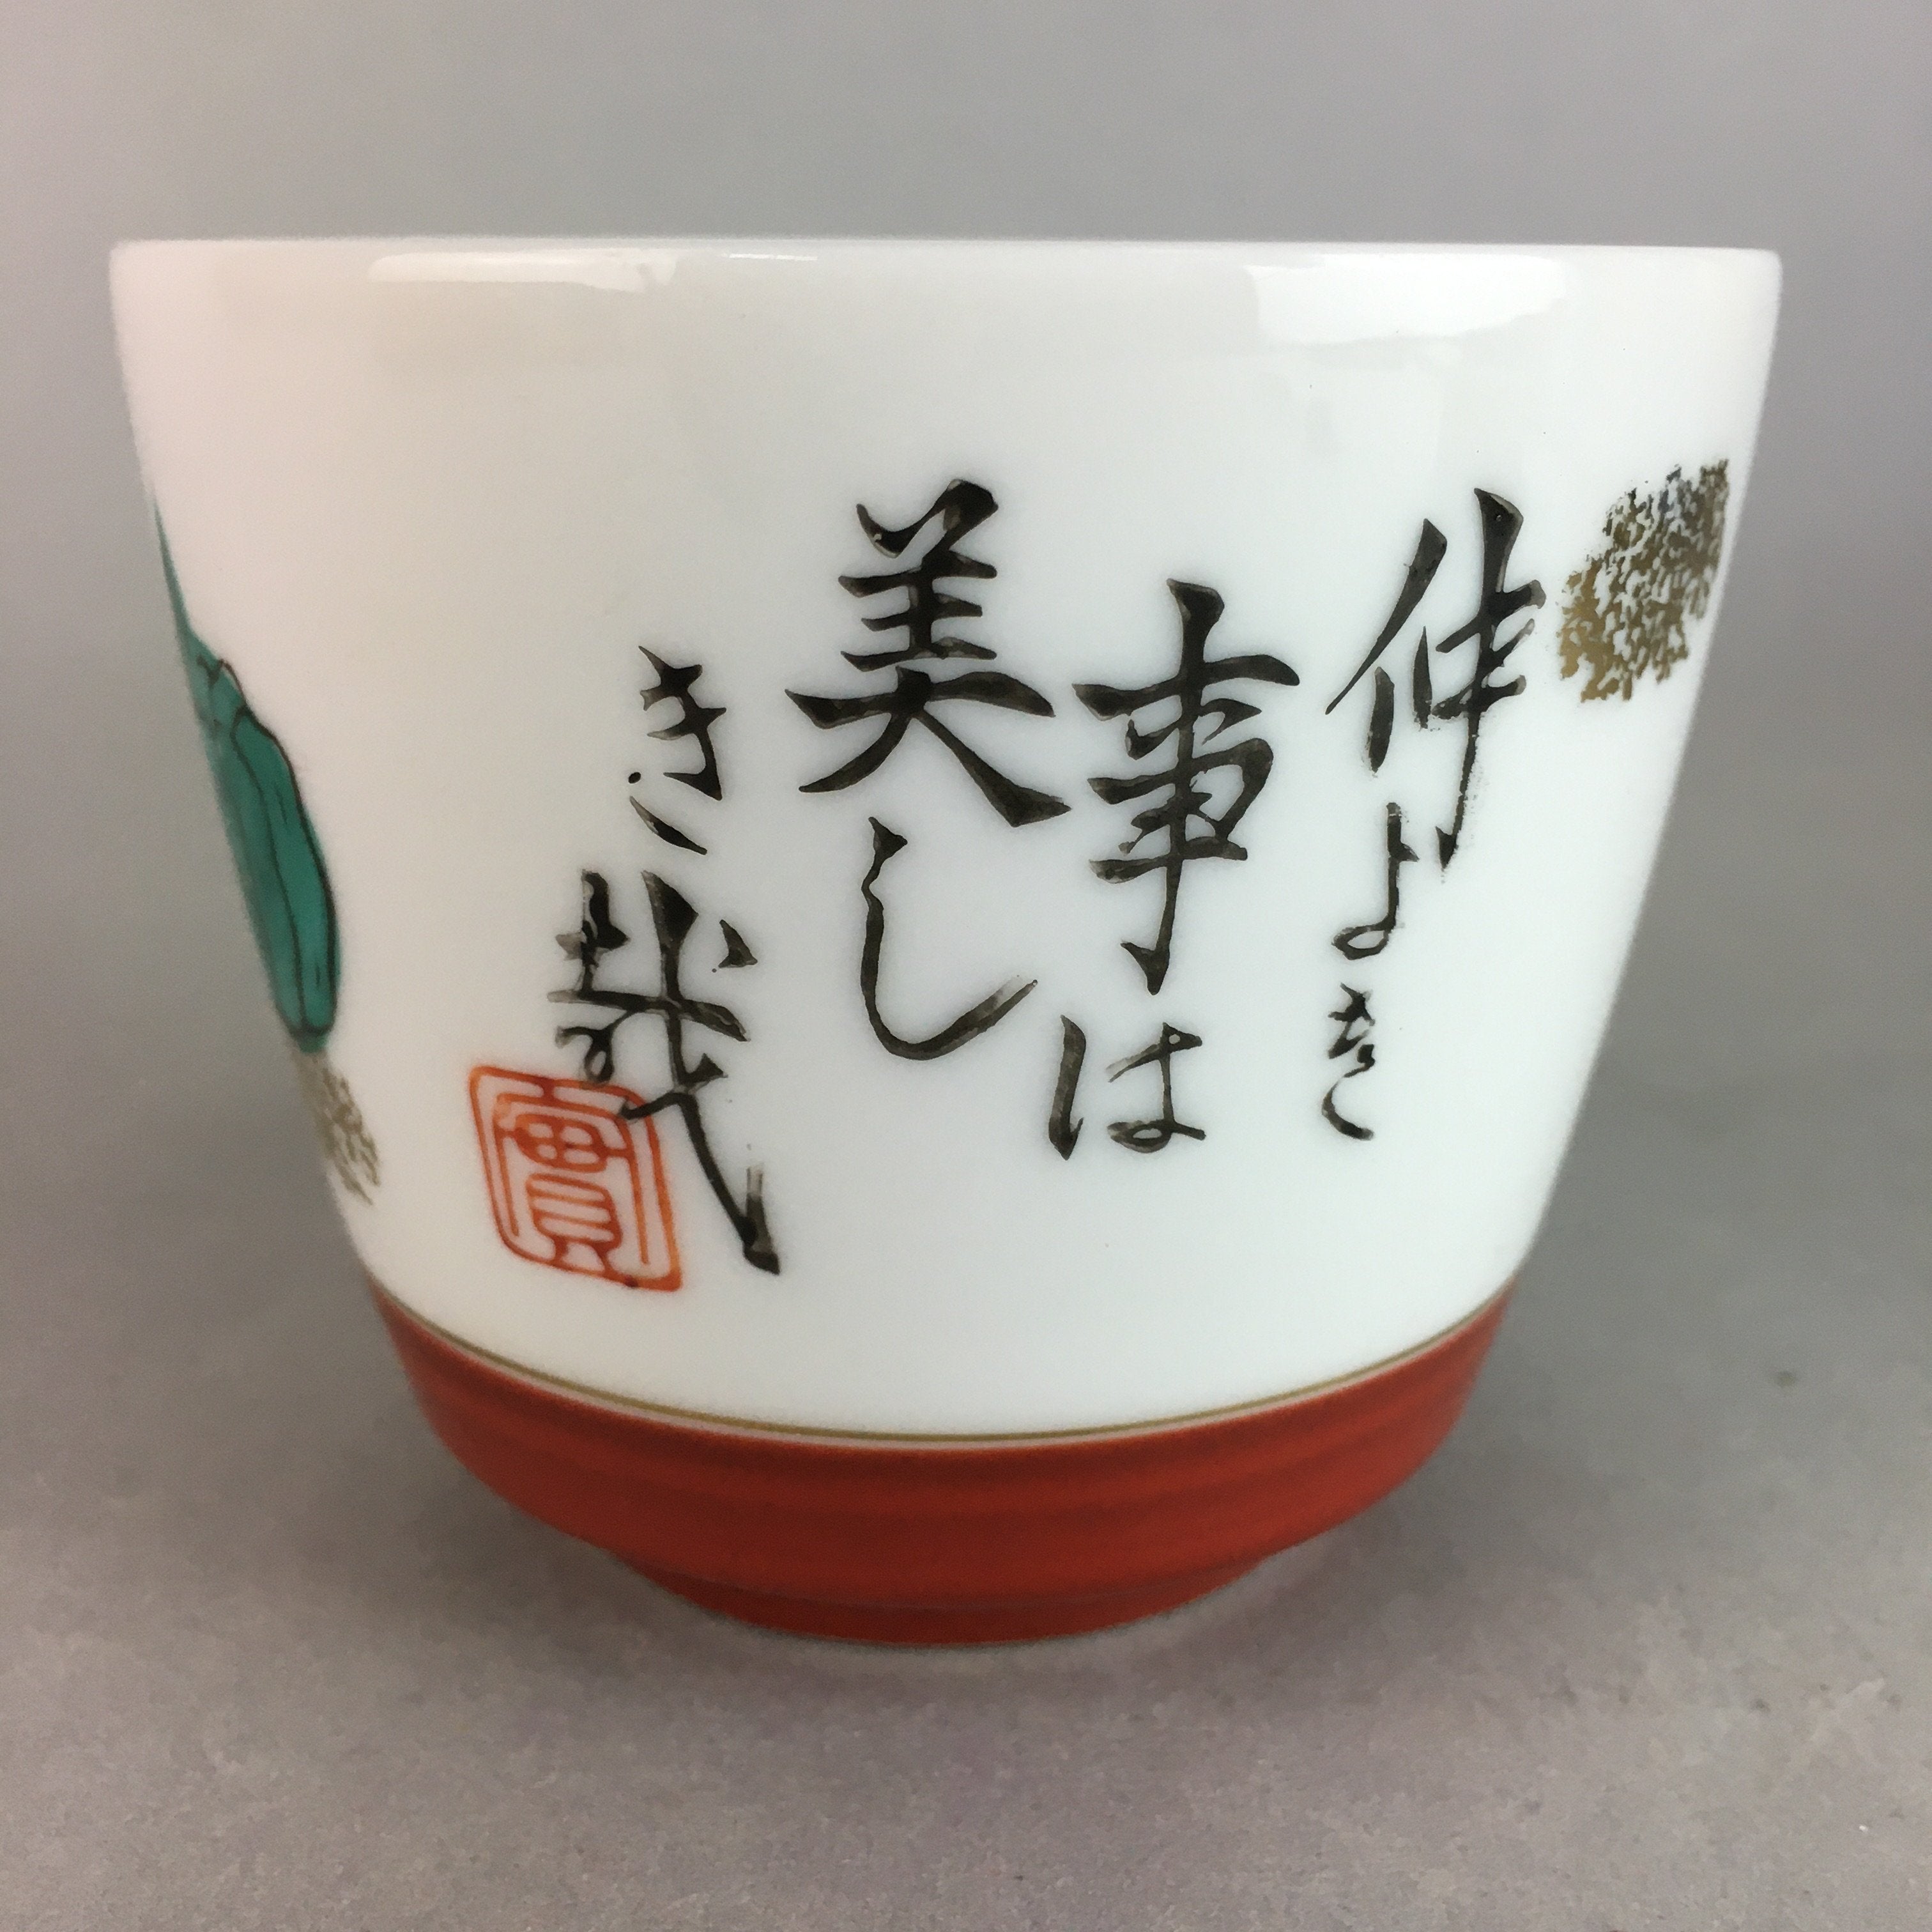 Japanese Porcelain Noodle Bowl Cup Vtg Soba Choko Word Kanji Vegetable PP291